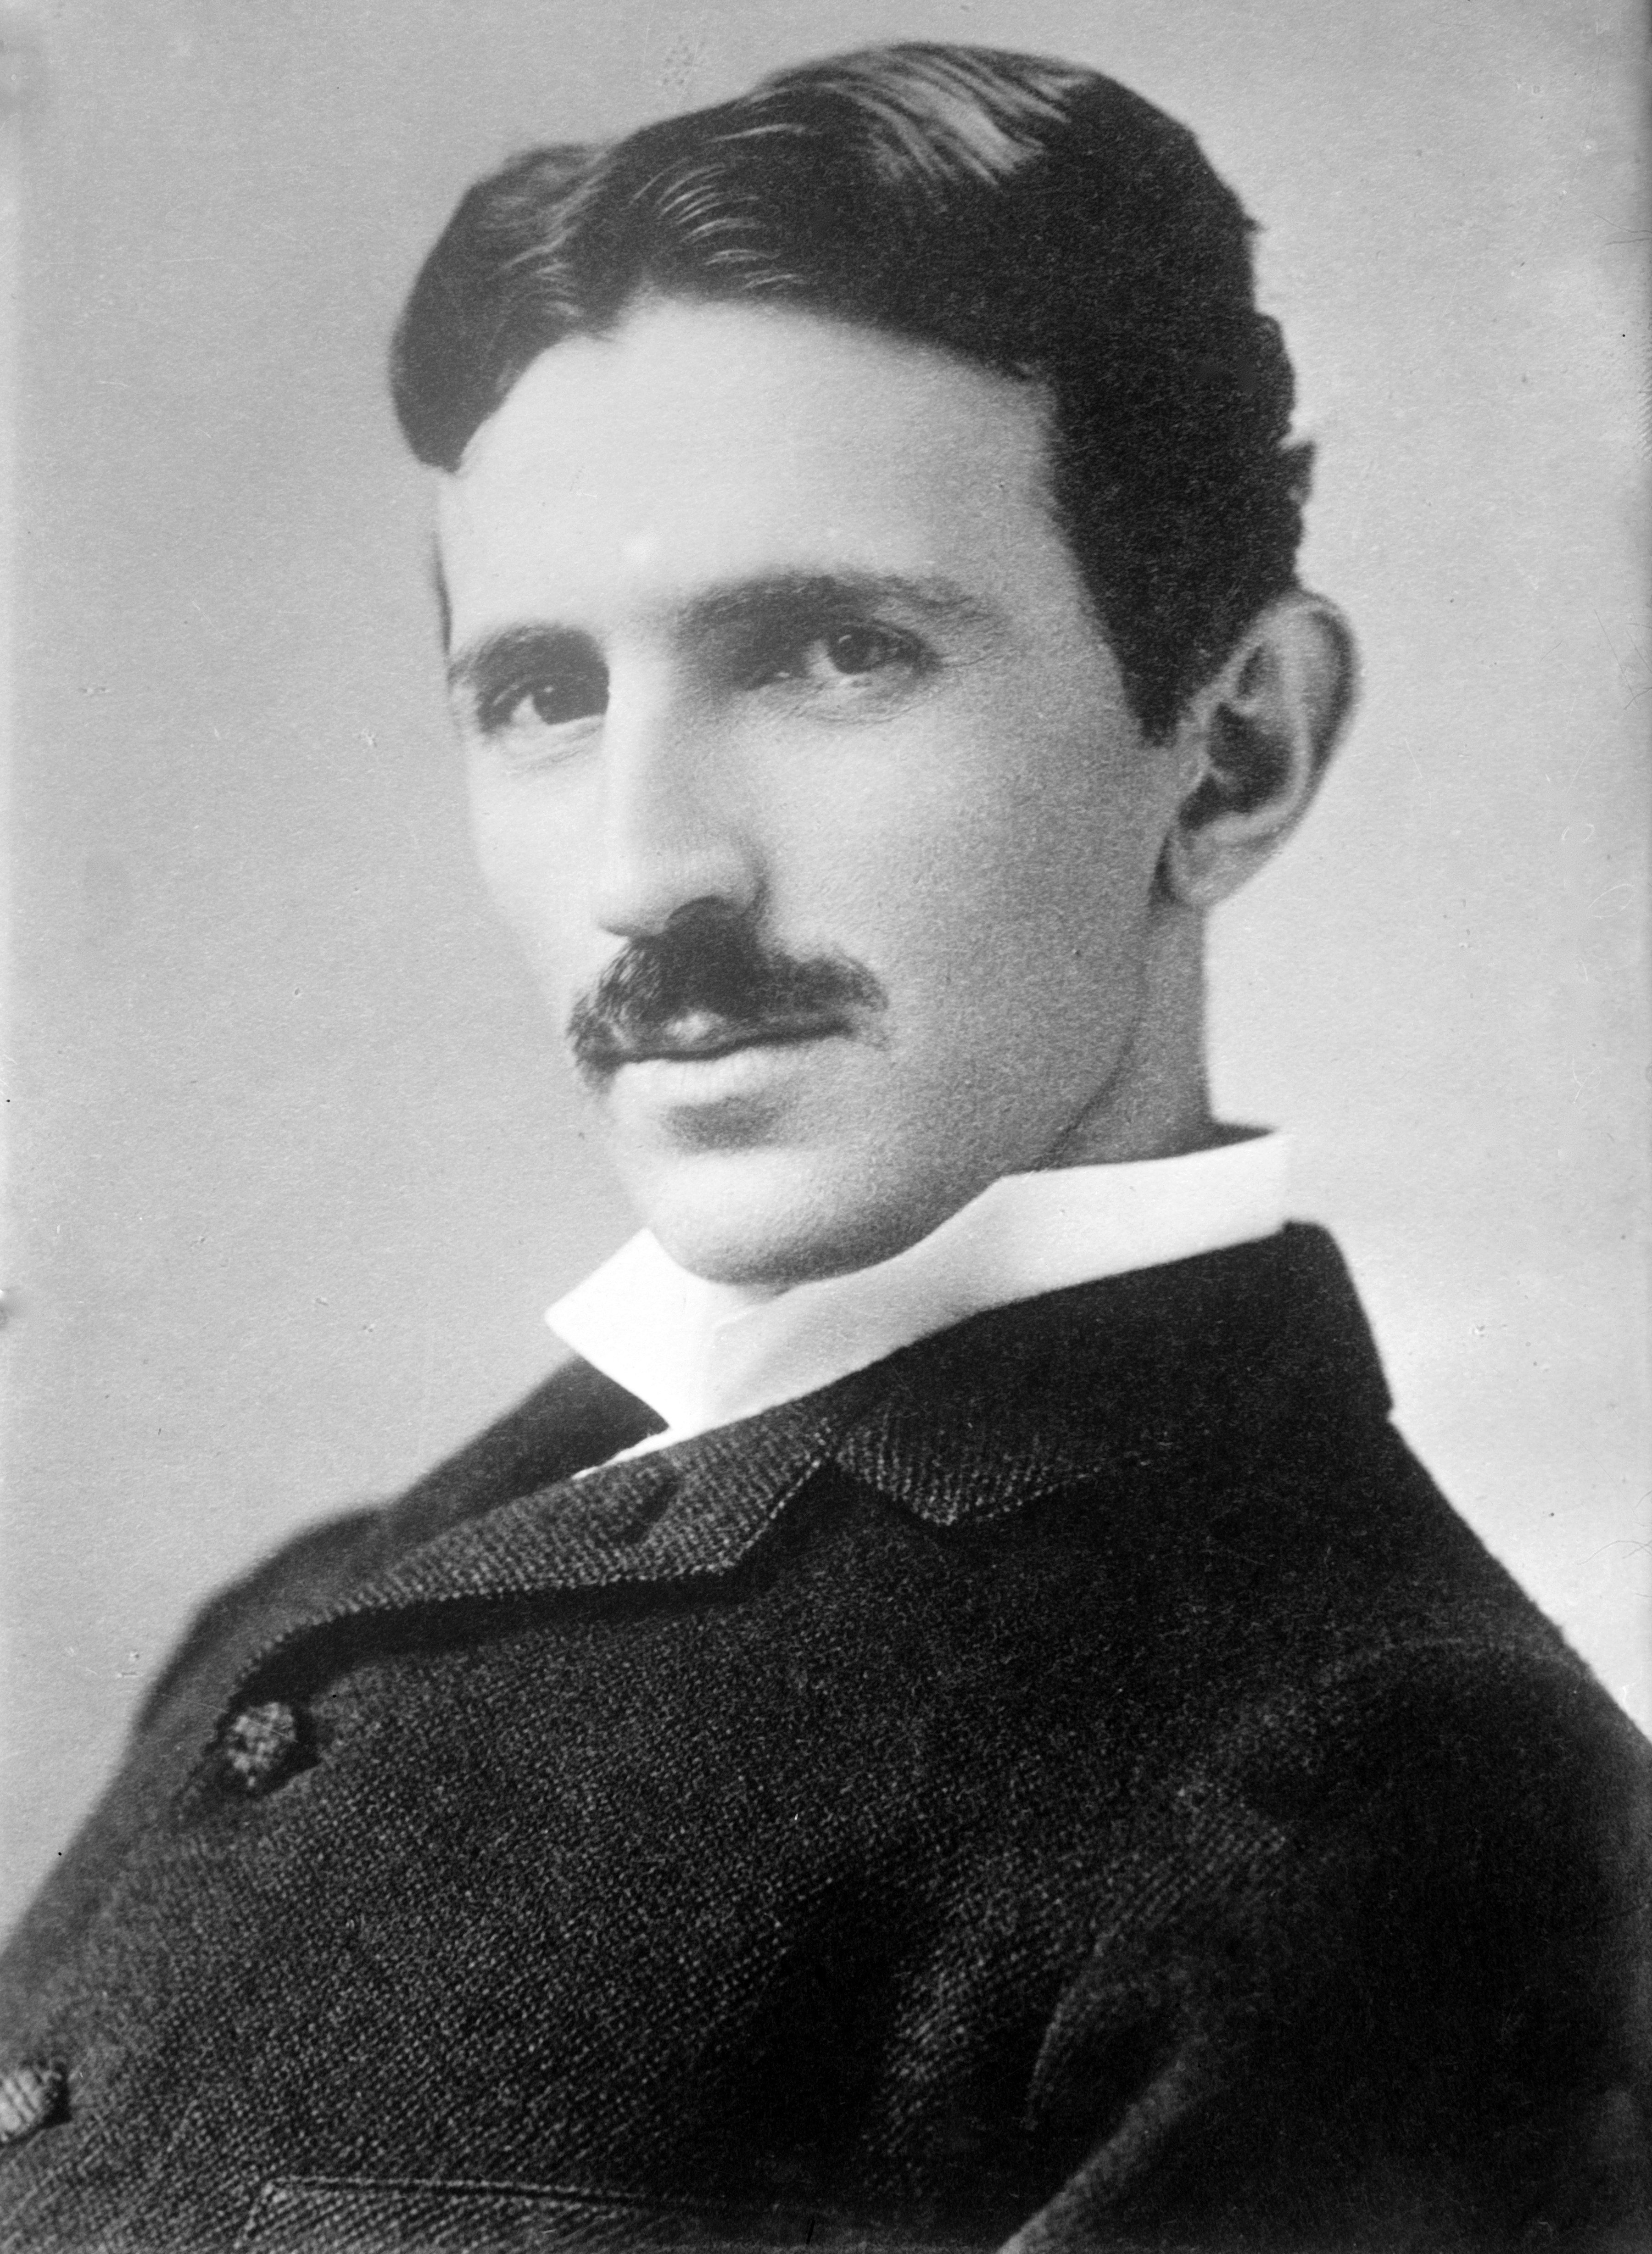 Retrato de Nikola Tesla. Getty Images